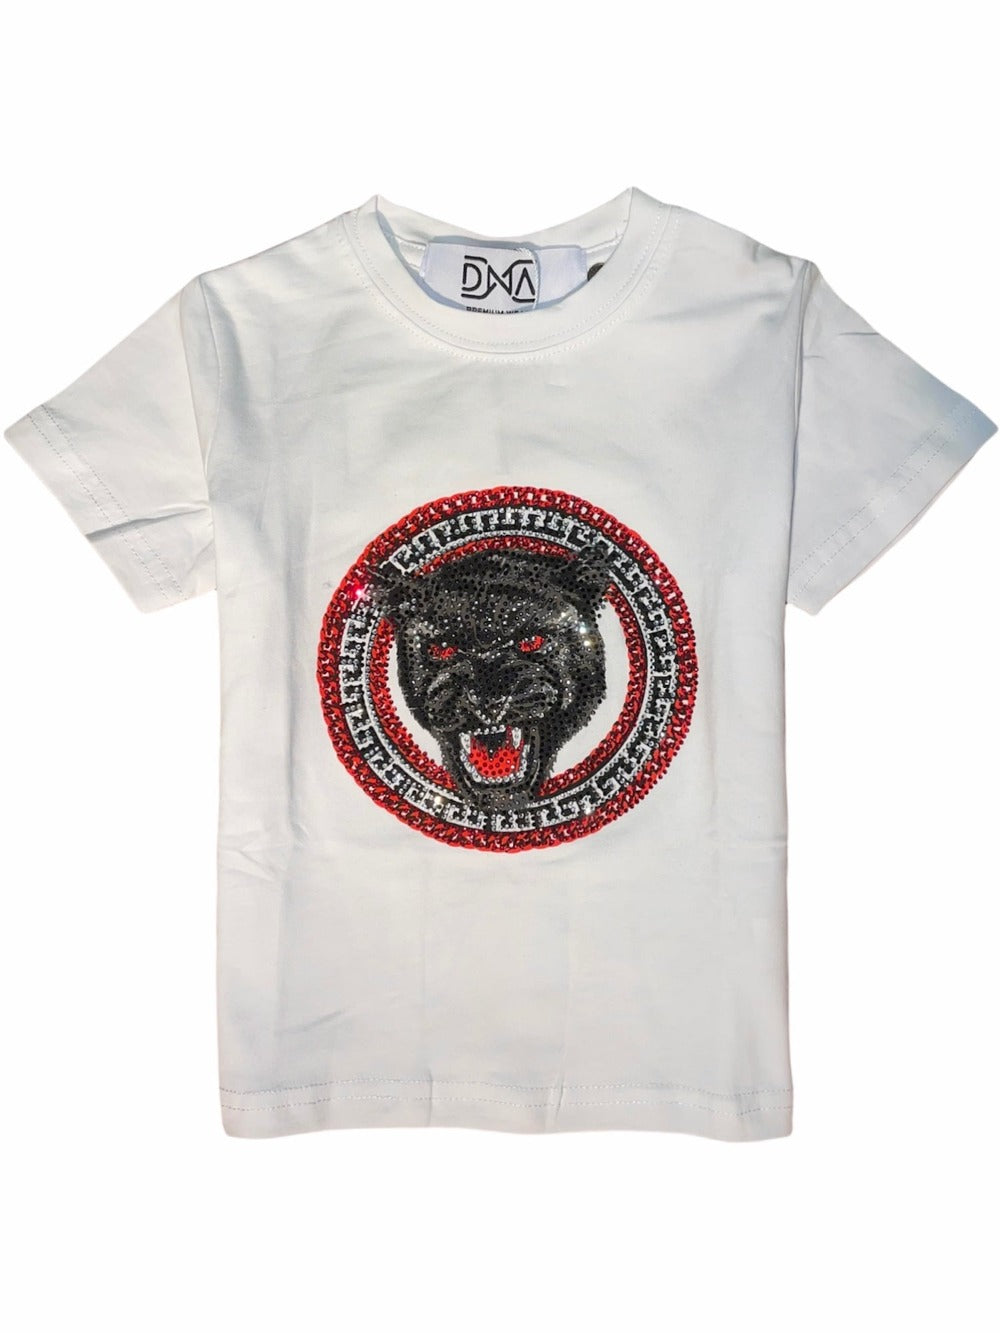 DNA Kids T-Shirt Panther-White-Black-Red